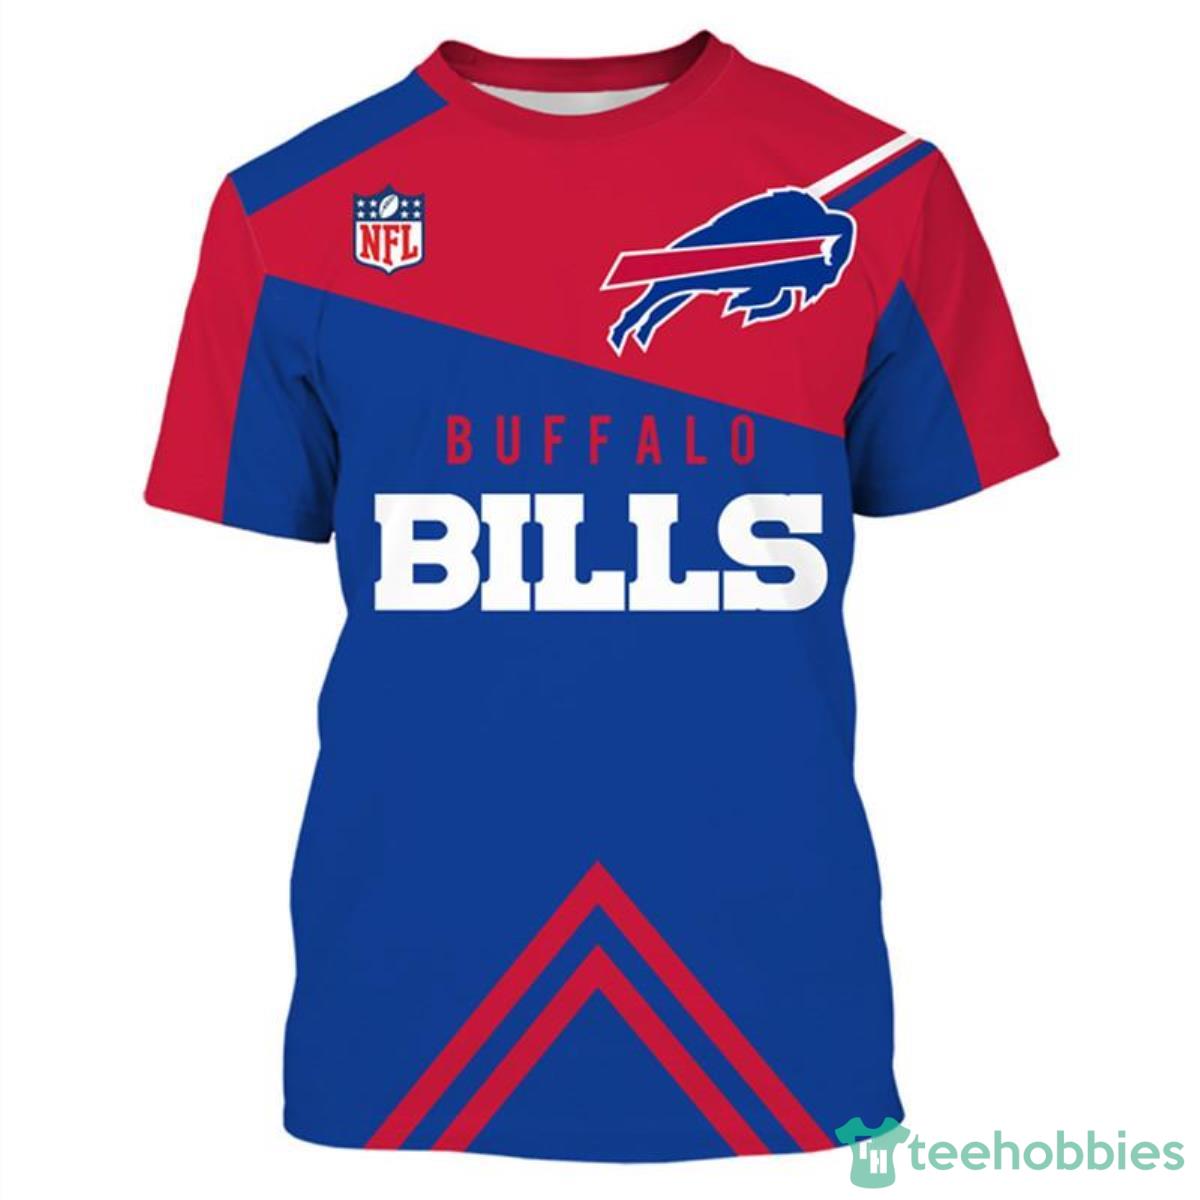 Buffalo-Bills-NFL-3D-Shirt-Vintage-For-fans